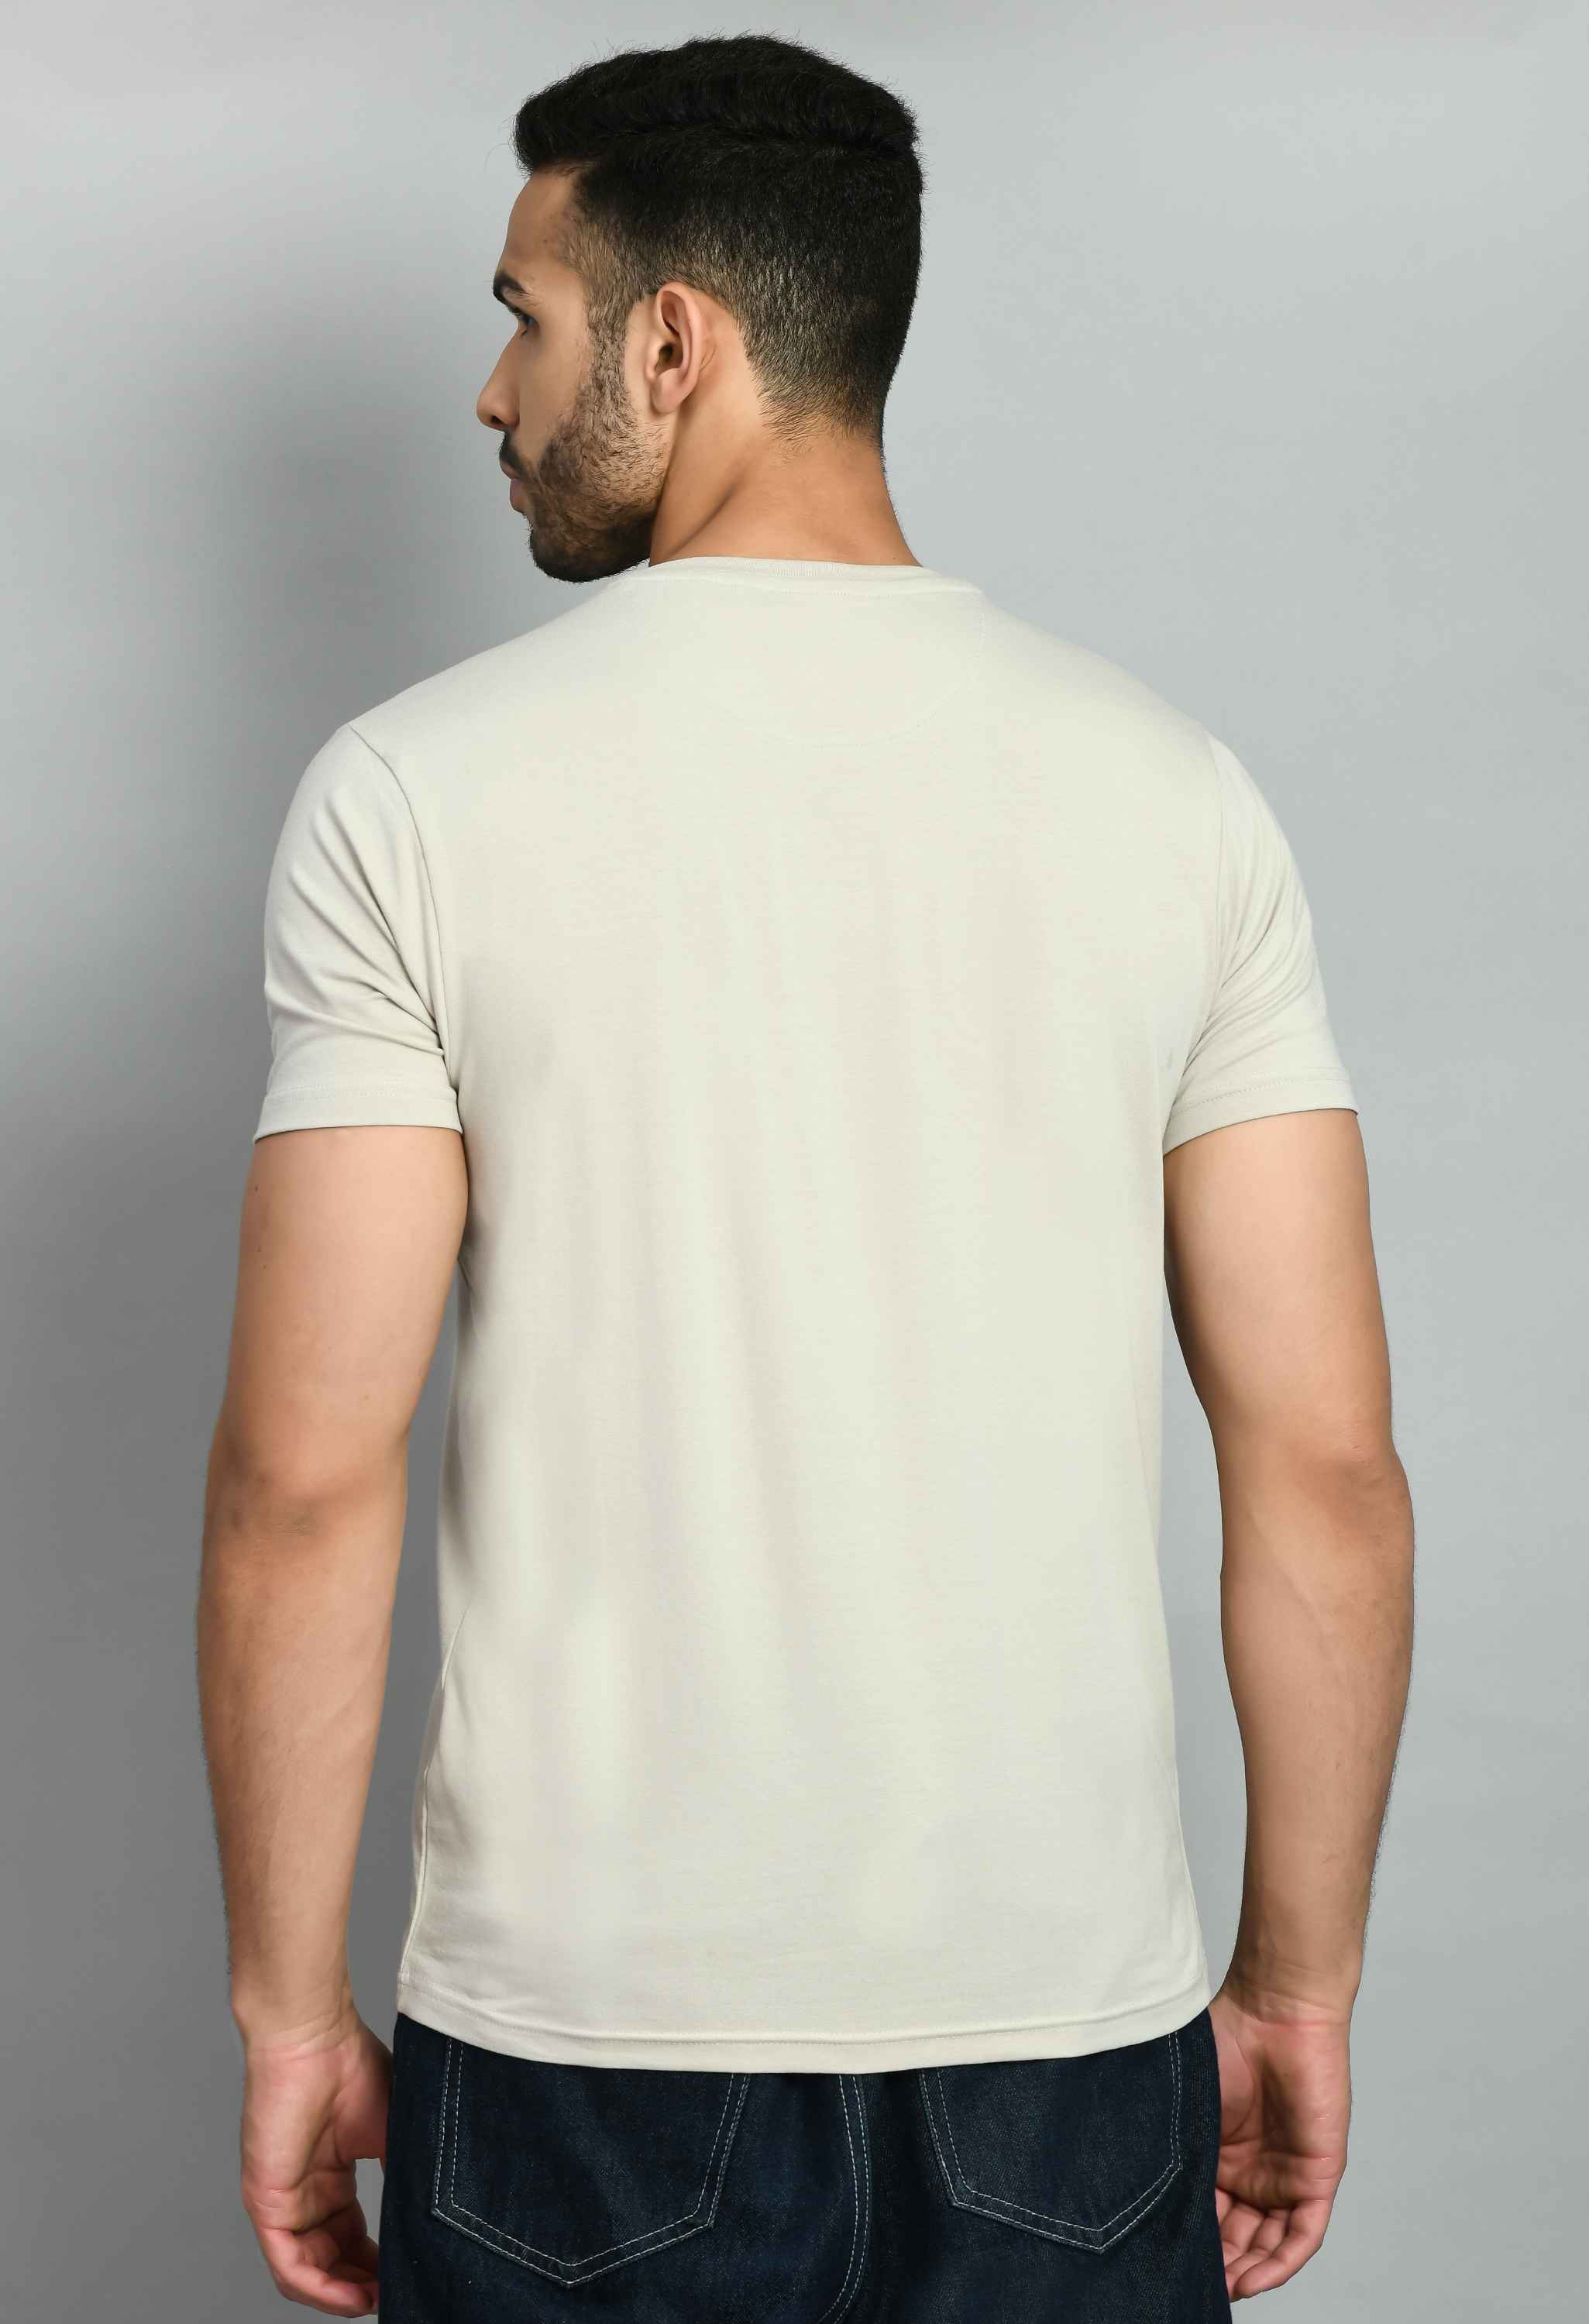 Men's Solid Beige Casual T-Shirt